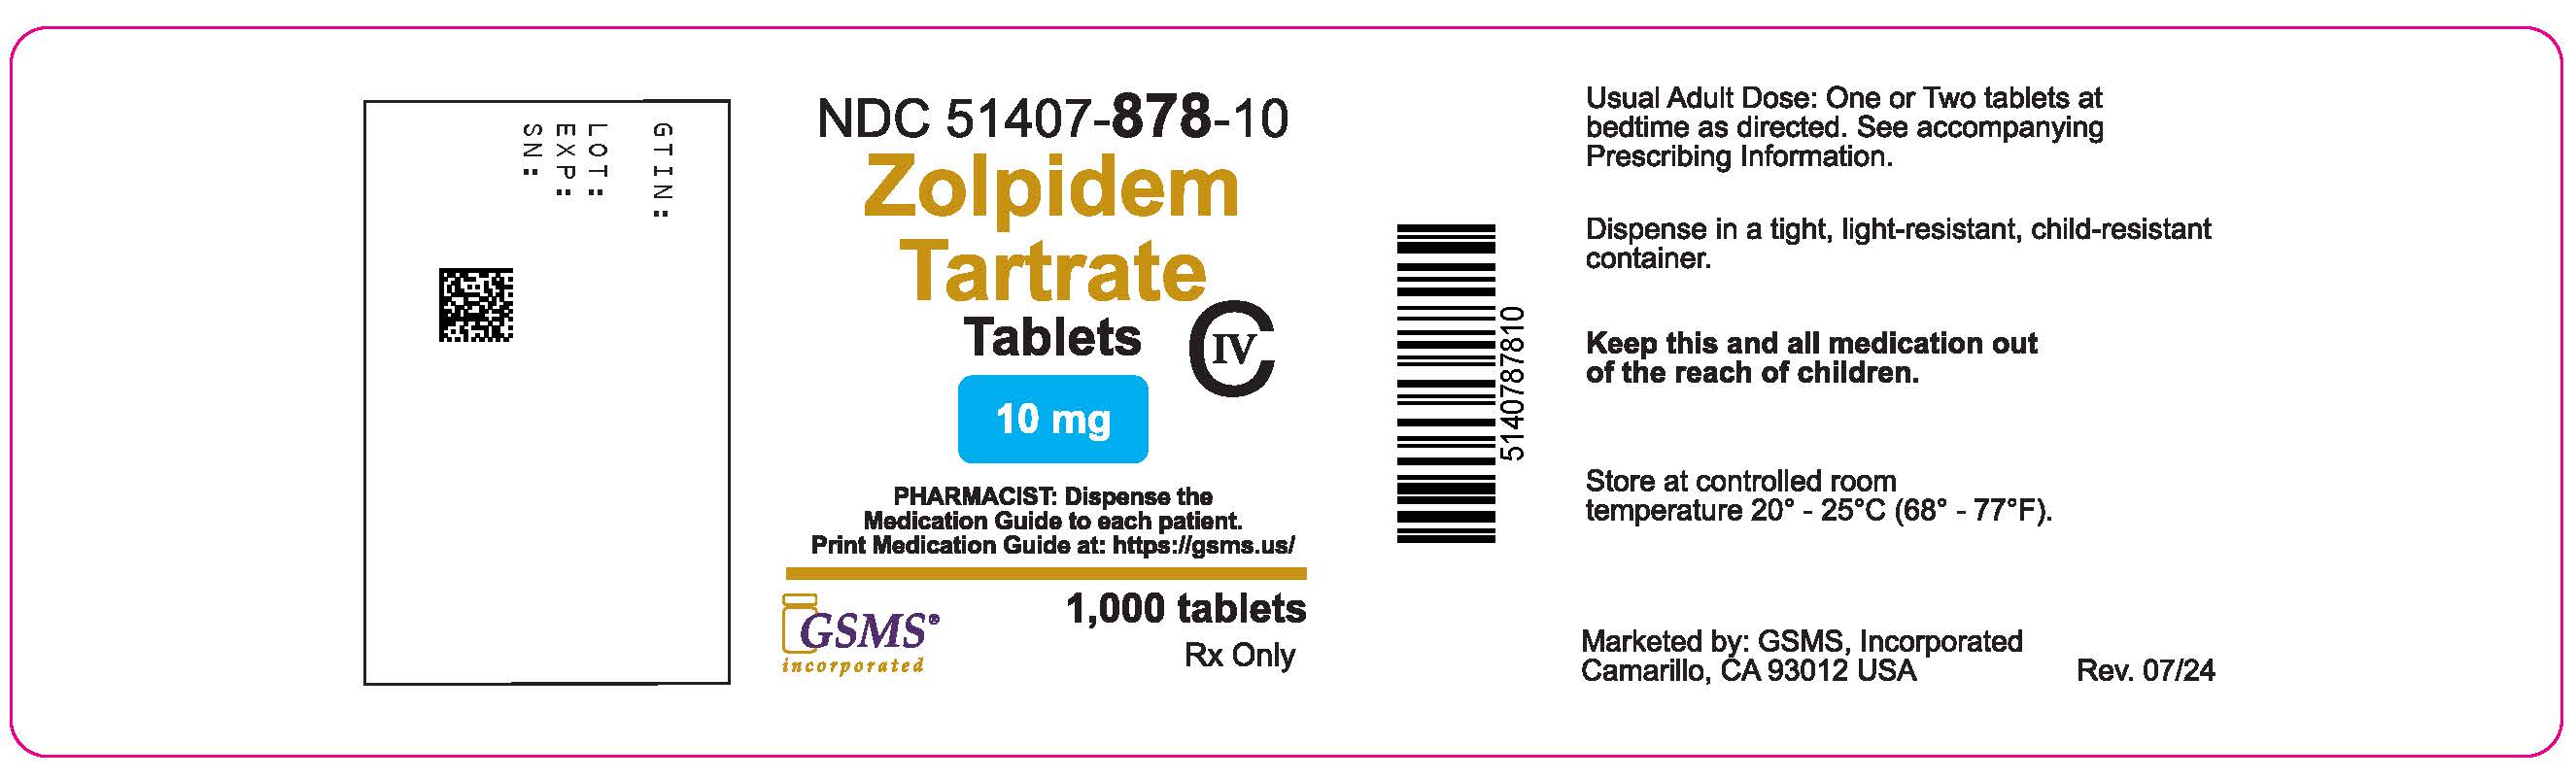 51407-878-10OL - Zolpidem 10 mg - Rev. 0724.jpg